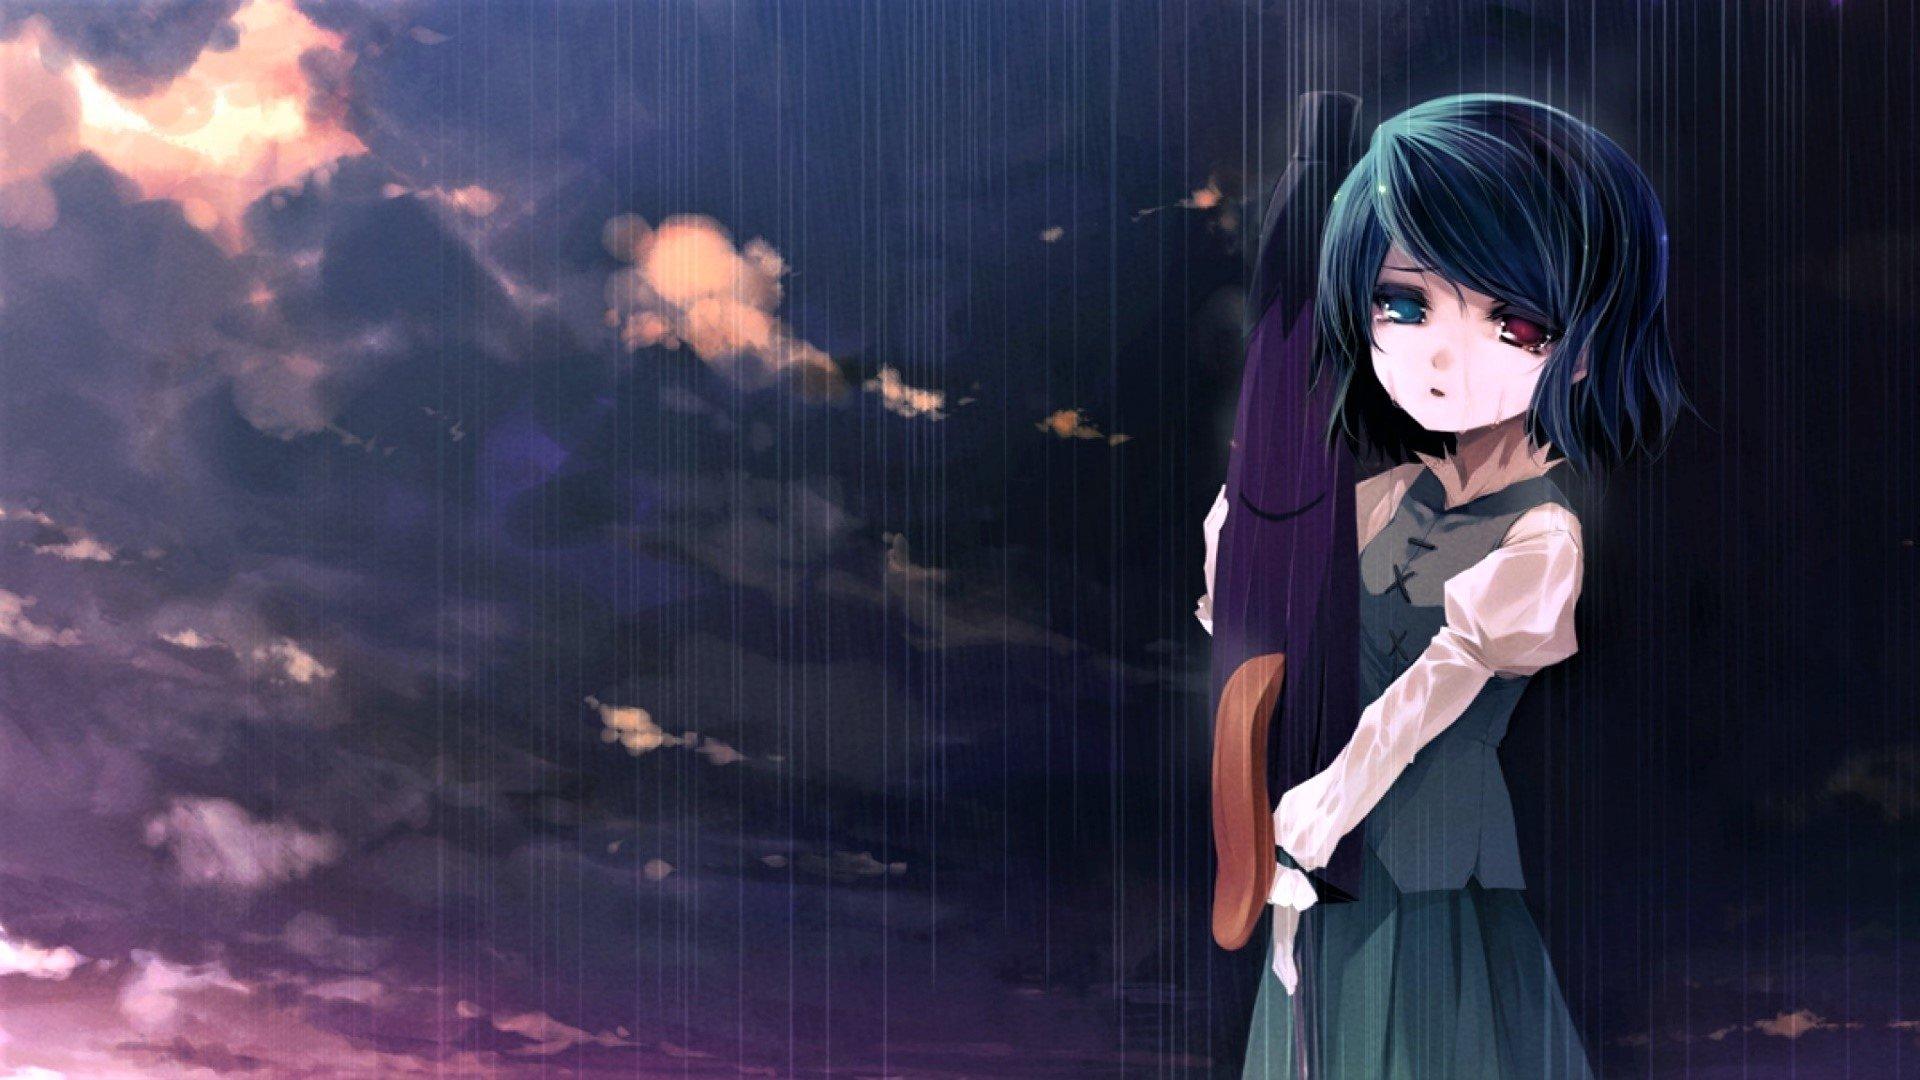 Sad Anime Girl in the Rain HD Wallpapers